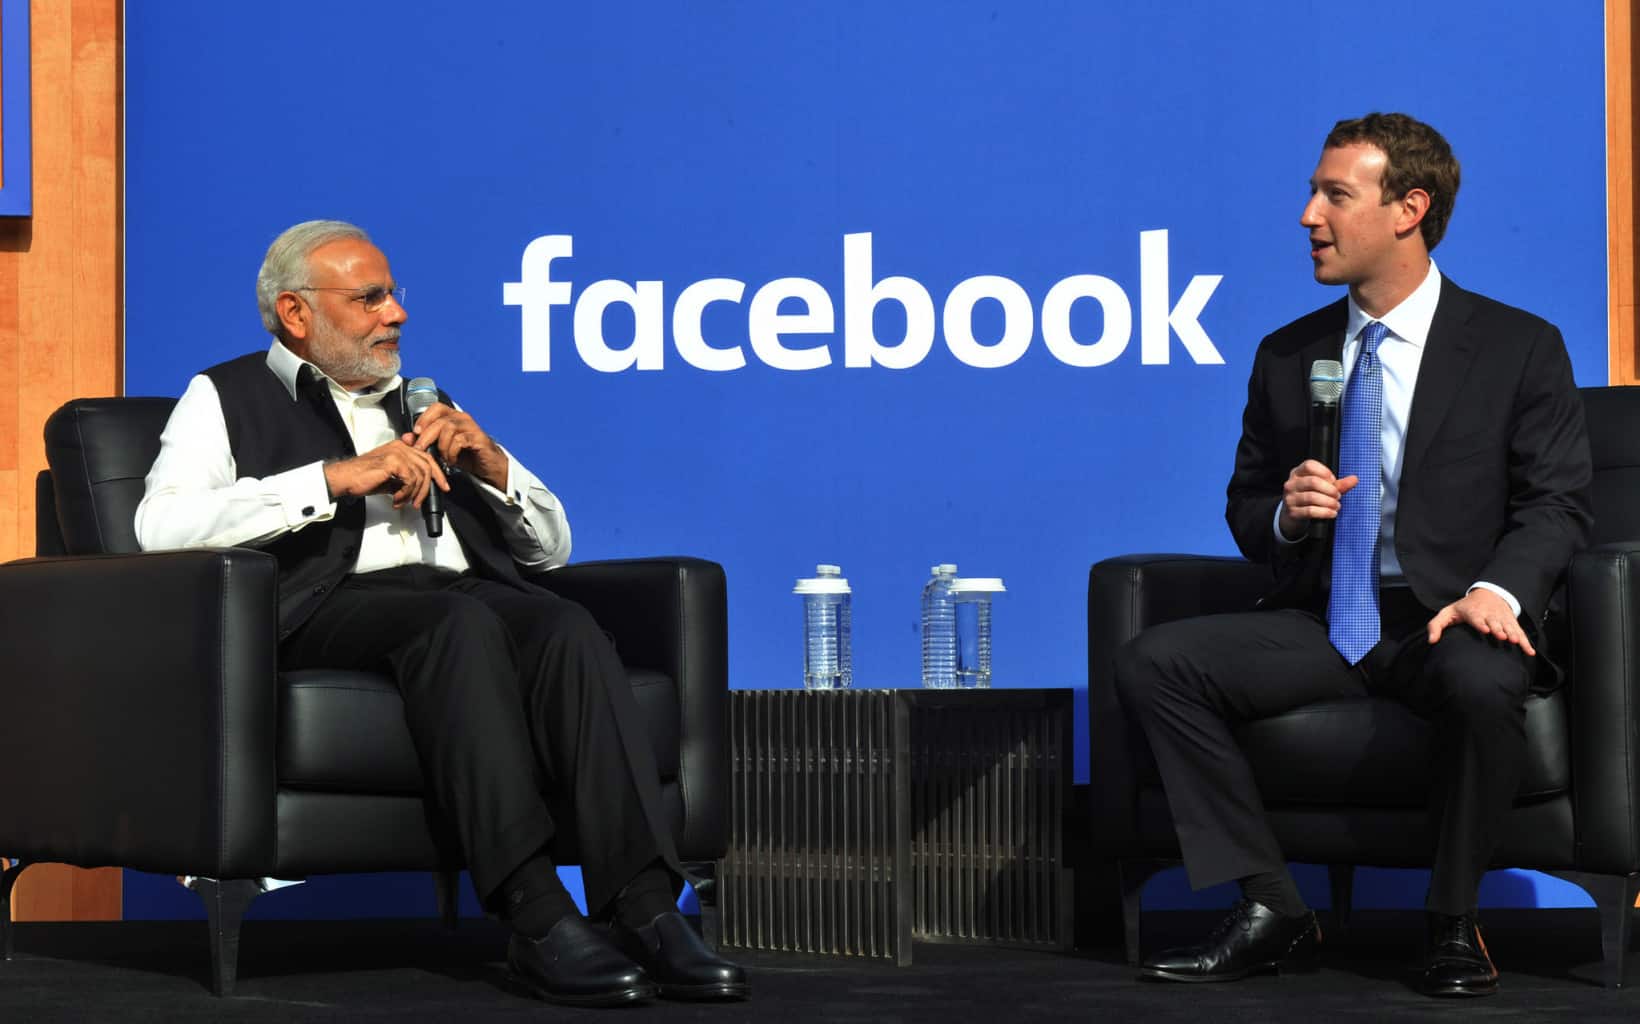 فيسبوك تتجاهل خطاب الكراهية لإرضاء الحكومة الهندية